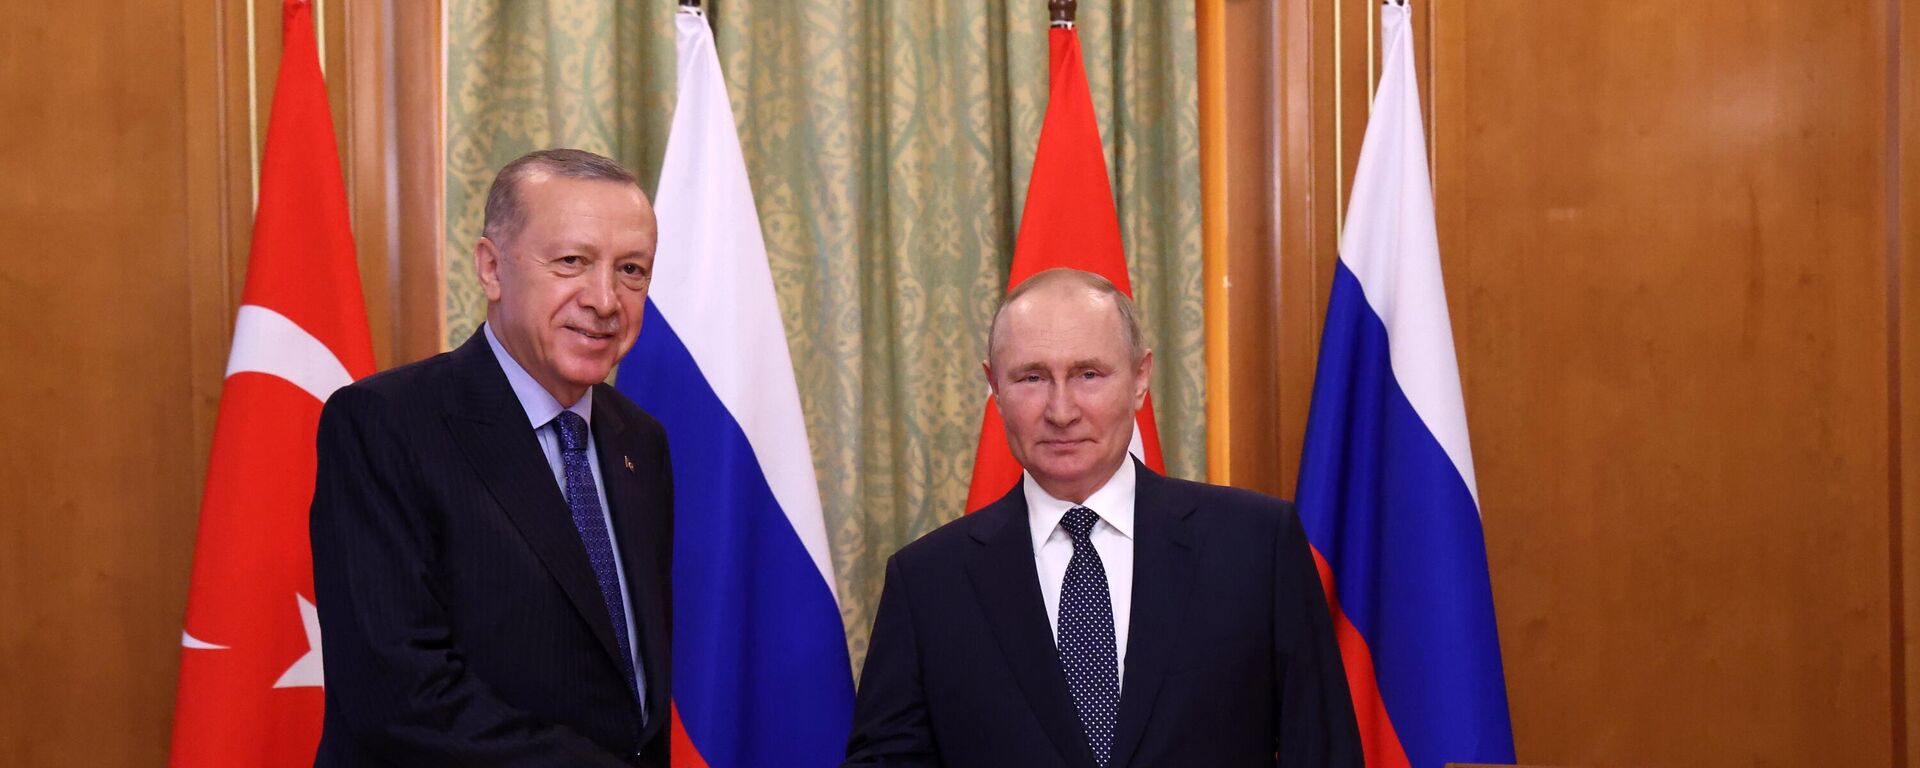 プーチン大統領、トルコのエルドアン大統領と会談 - Sputnik 日本, 1920, 06.08.2022